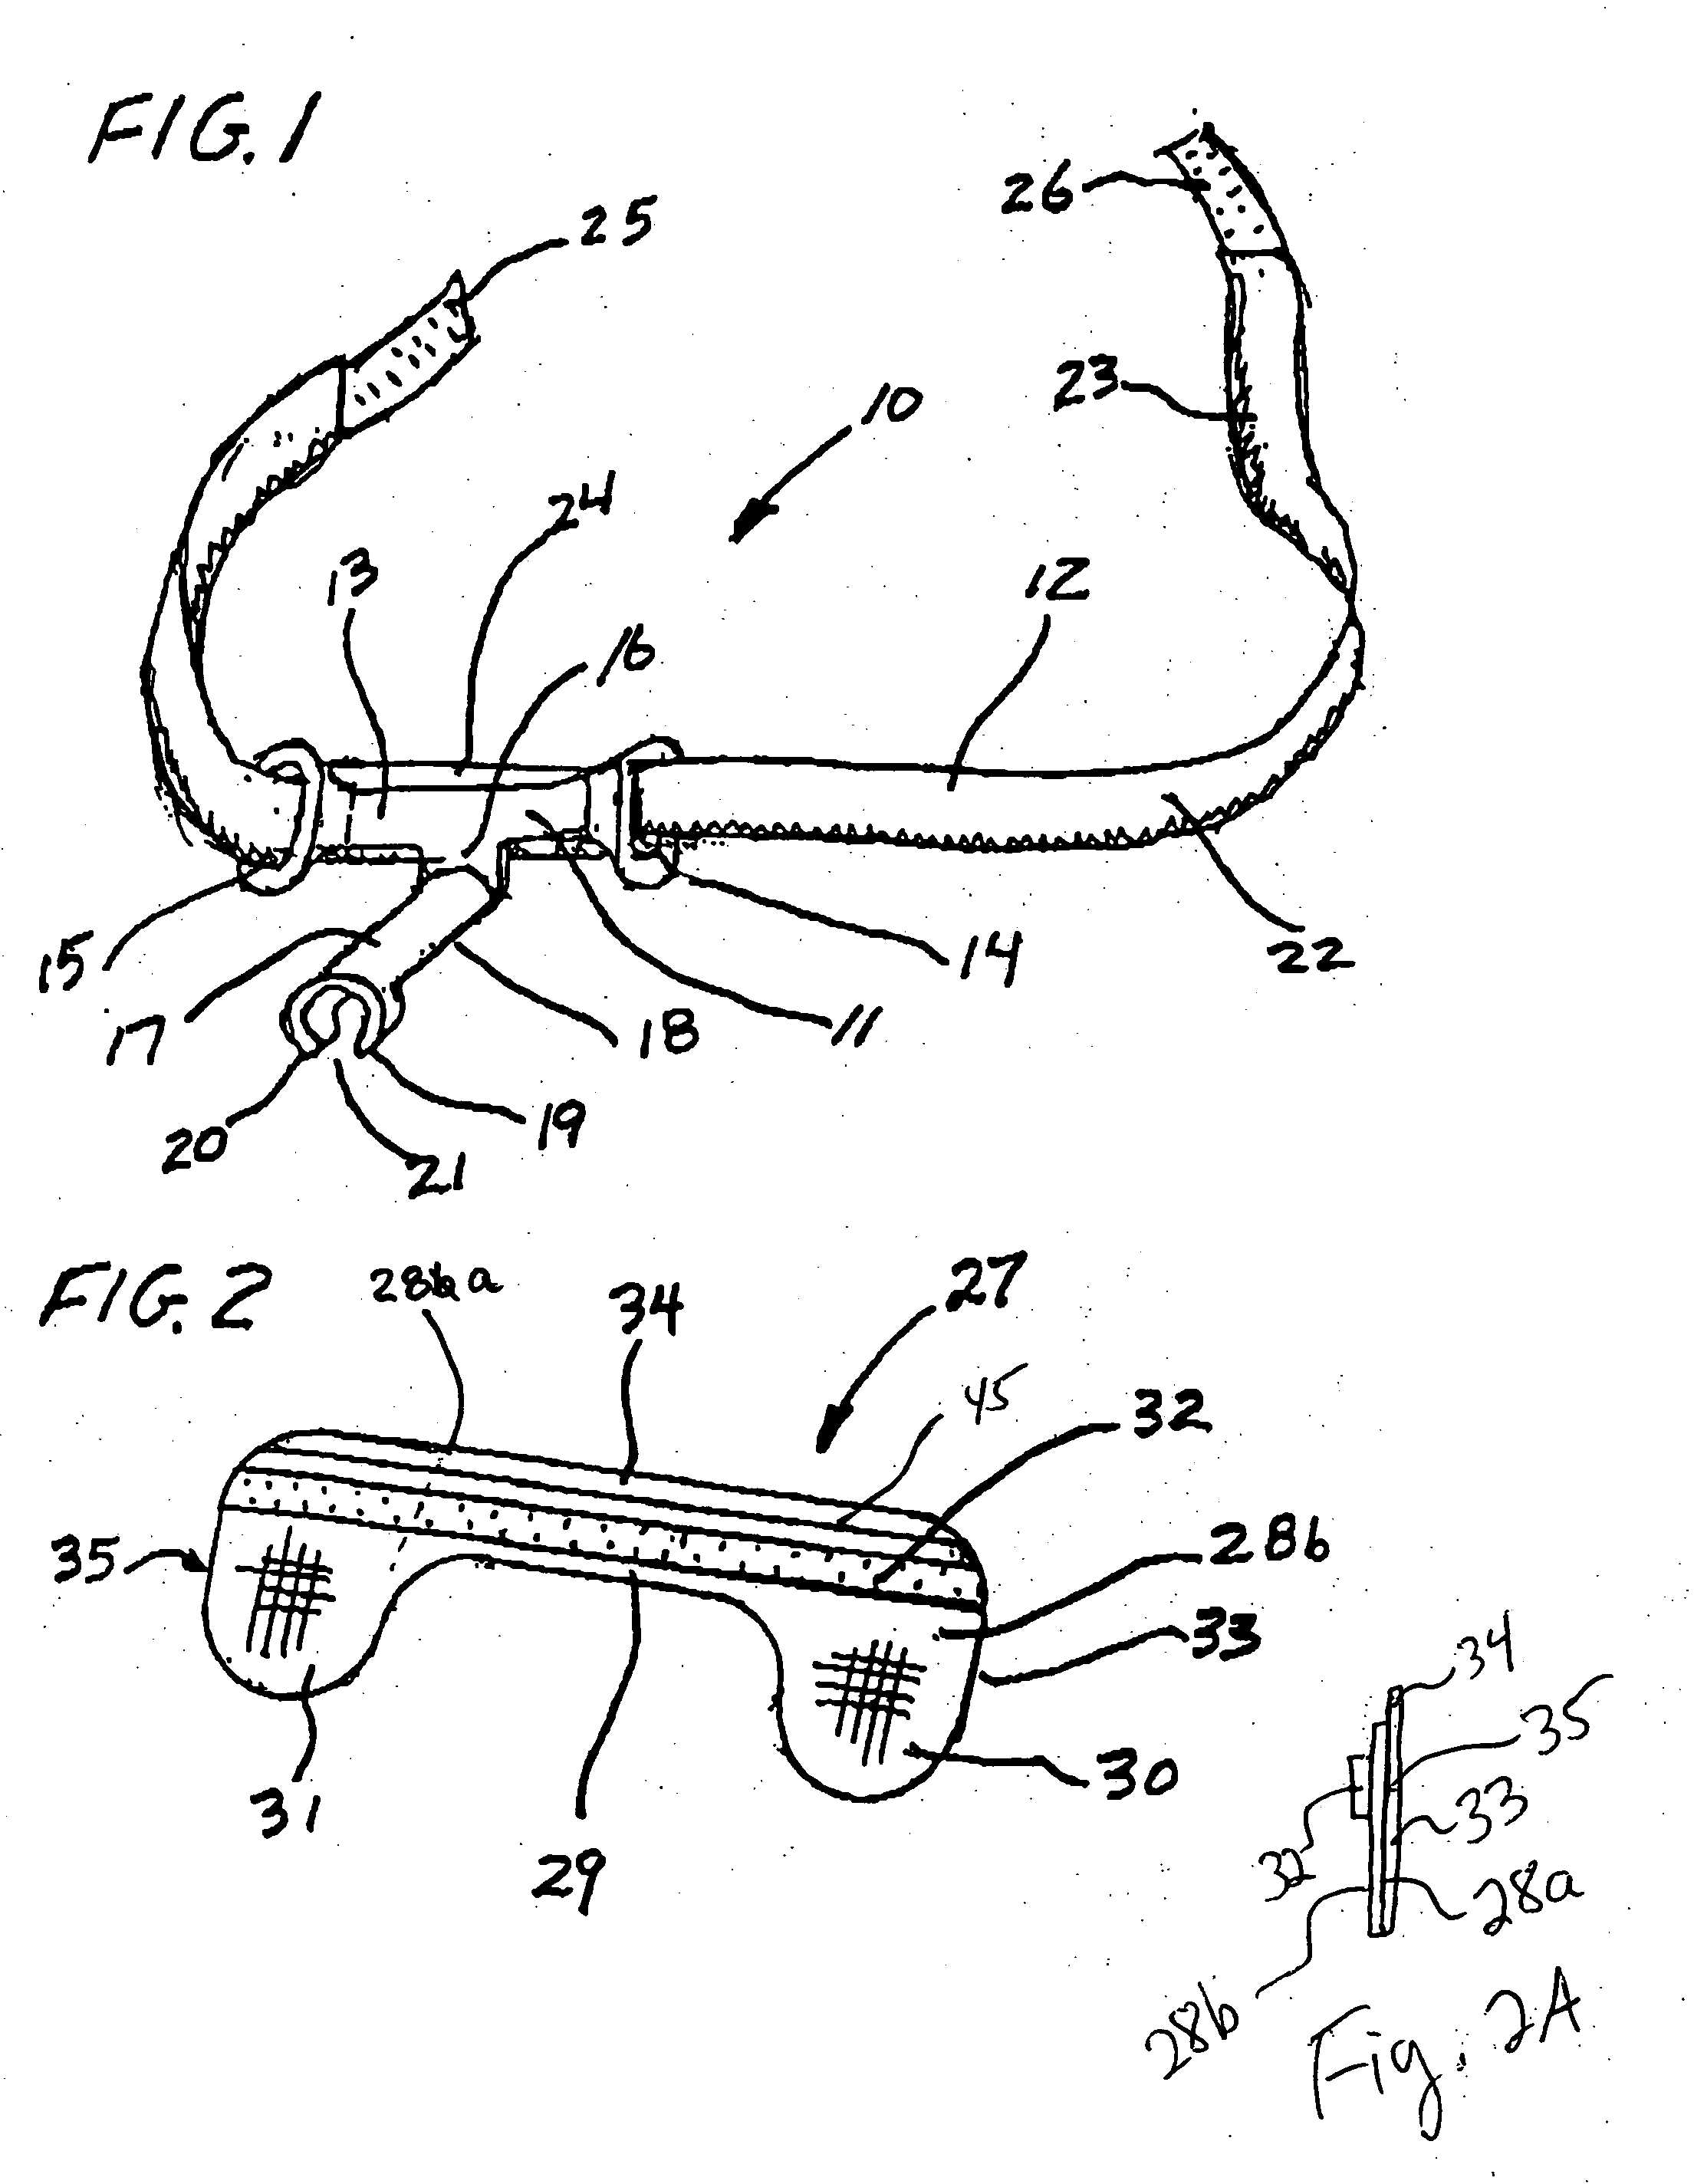 Endotracheal tube holder